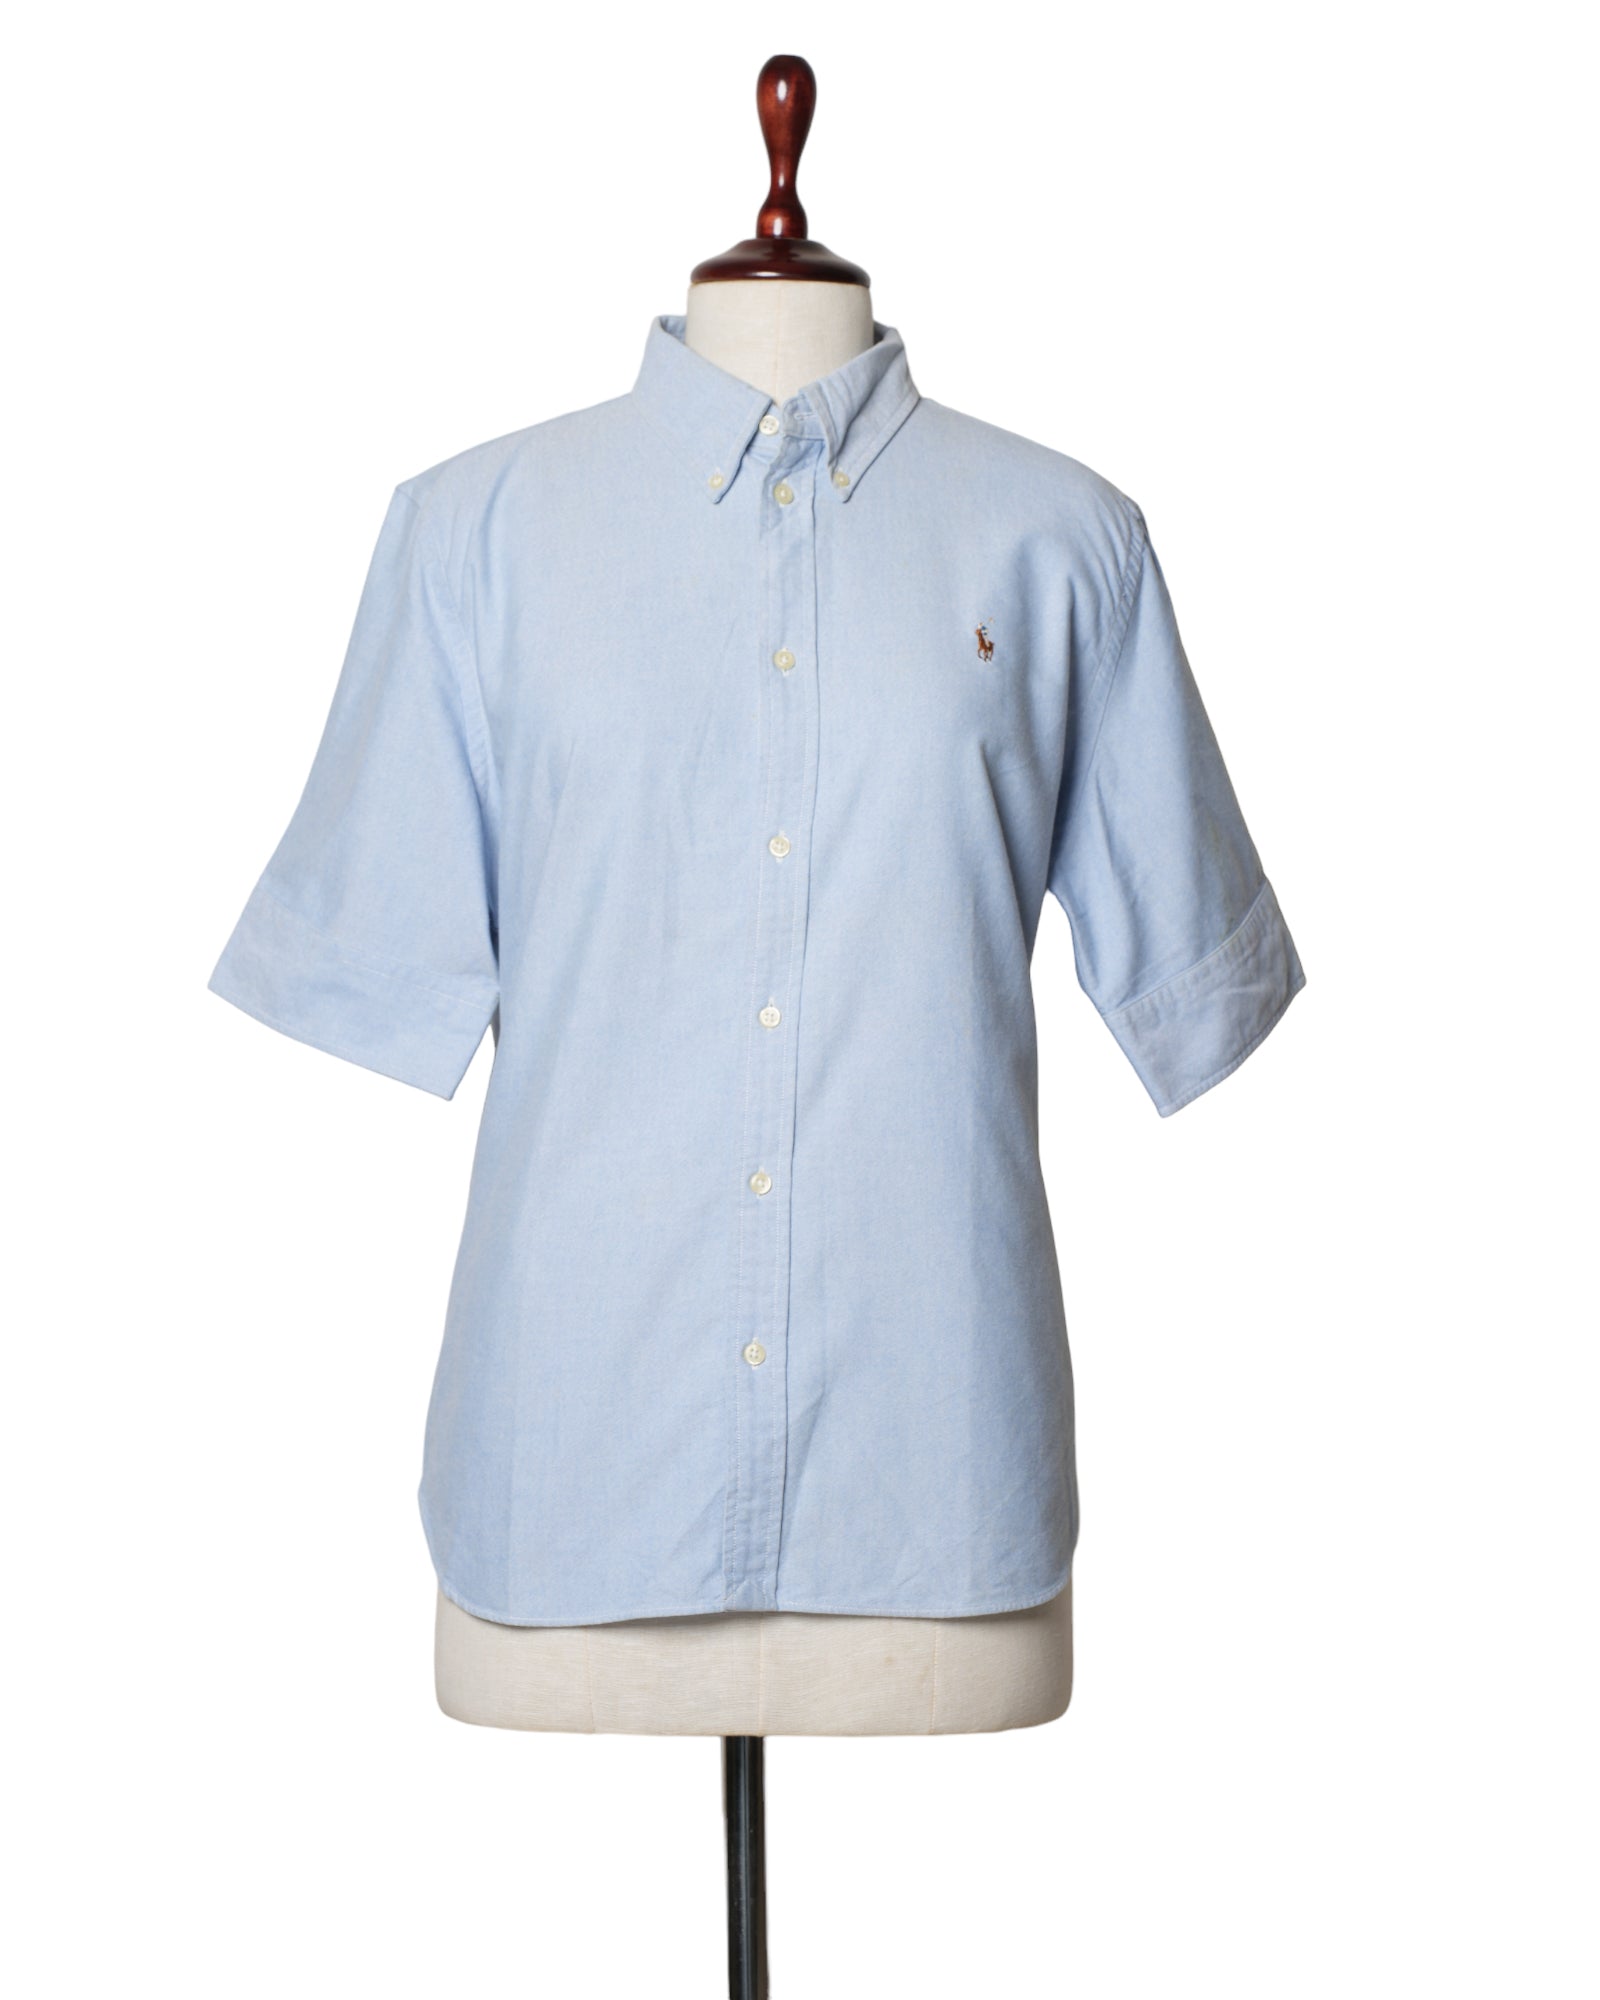 Ralph Lauren Blue Shirt Half Sleeves